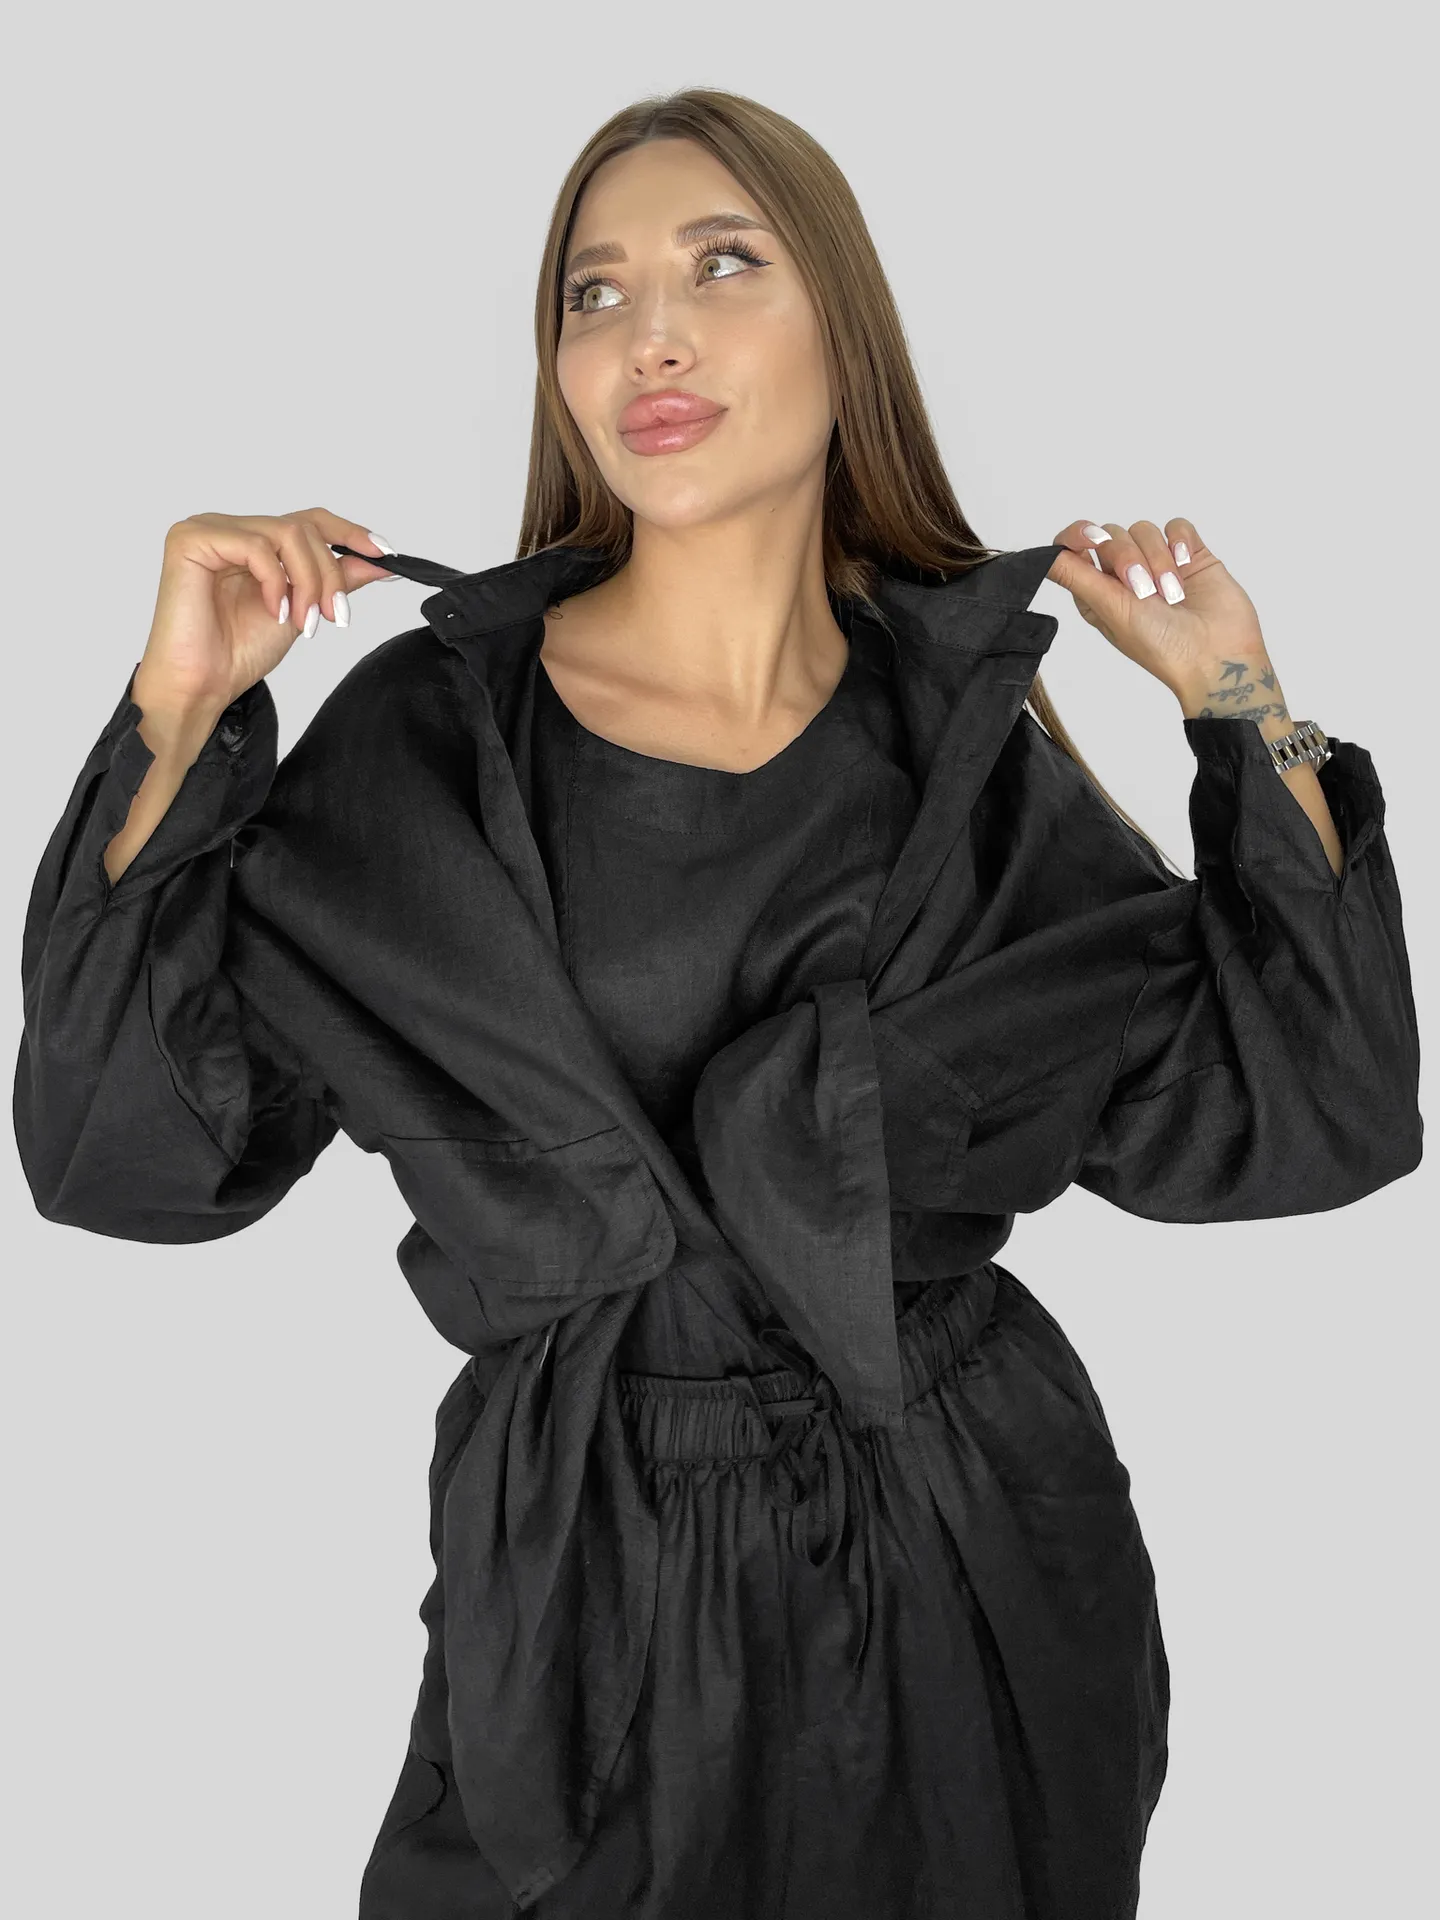 Костюм-тройка GZ 9168 льняной из блузы удлиненной рубашки и брюк на резинке недорого